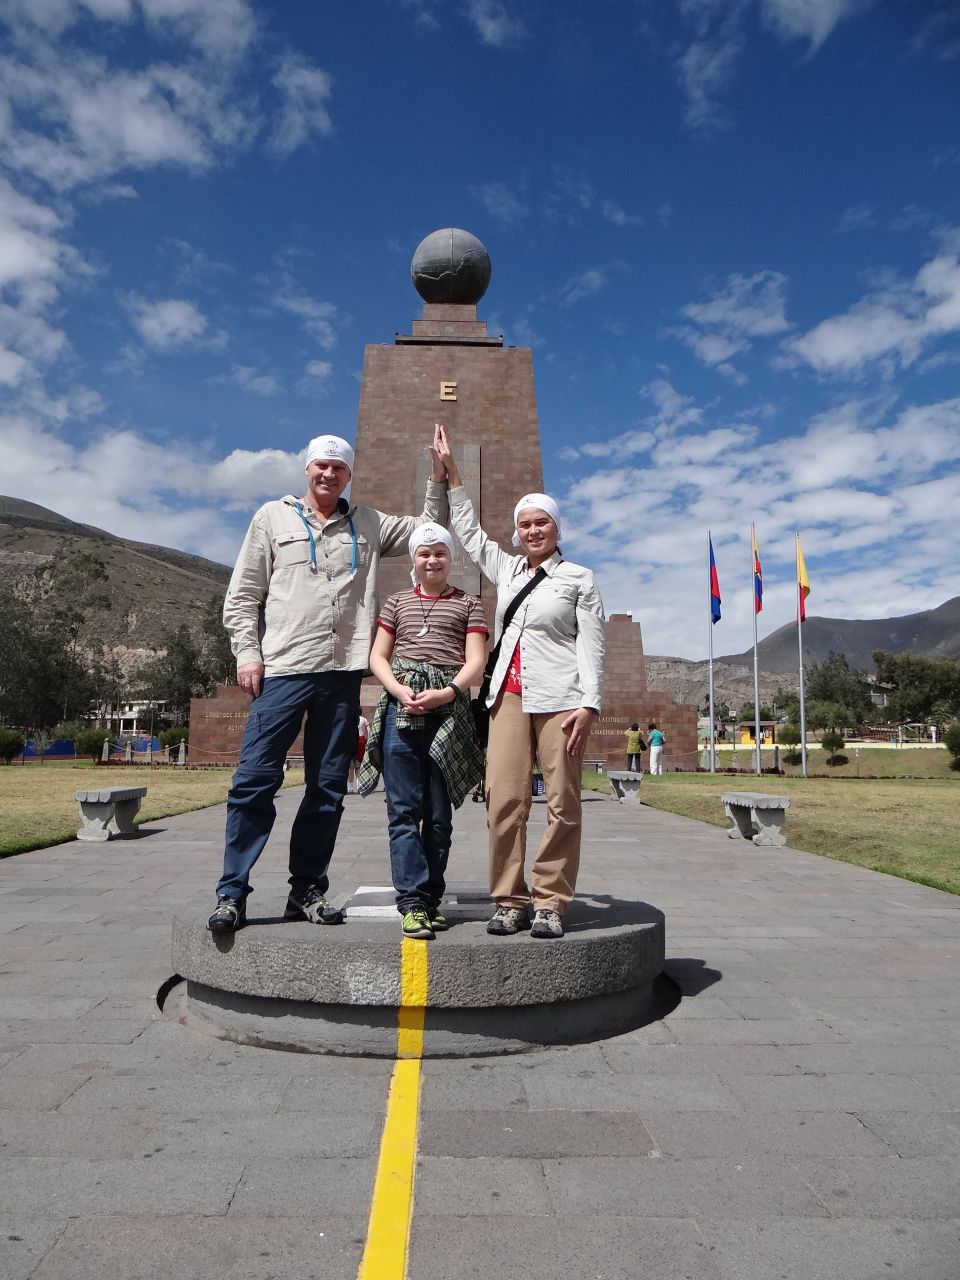 На середине мира. На вершине монумента- каменный глобус. - Южная Америка 2015. Часть 1. Эквадор: линия экватора и город Кито.